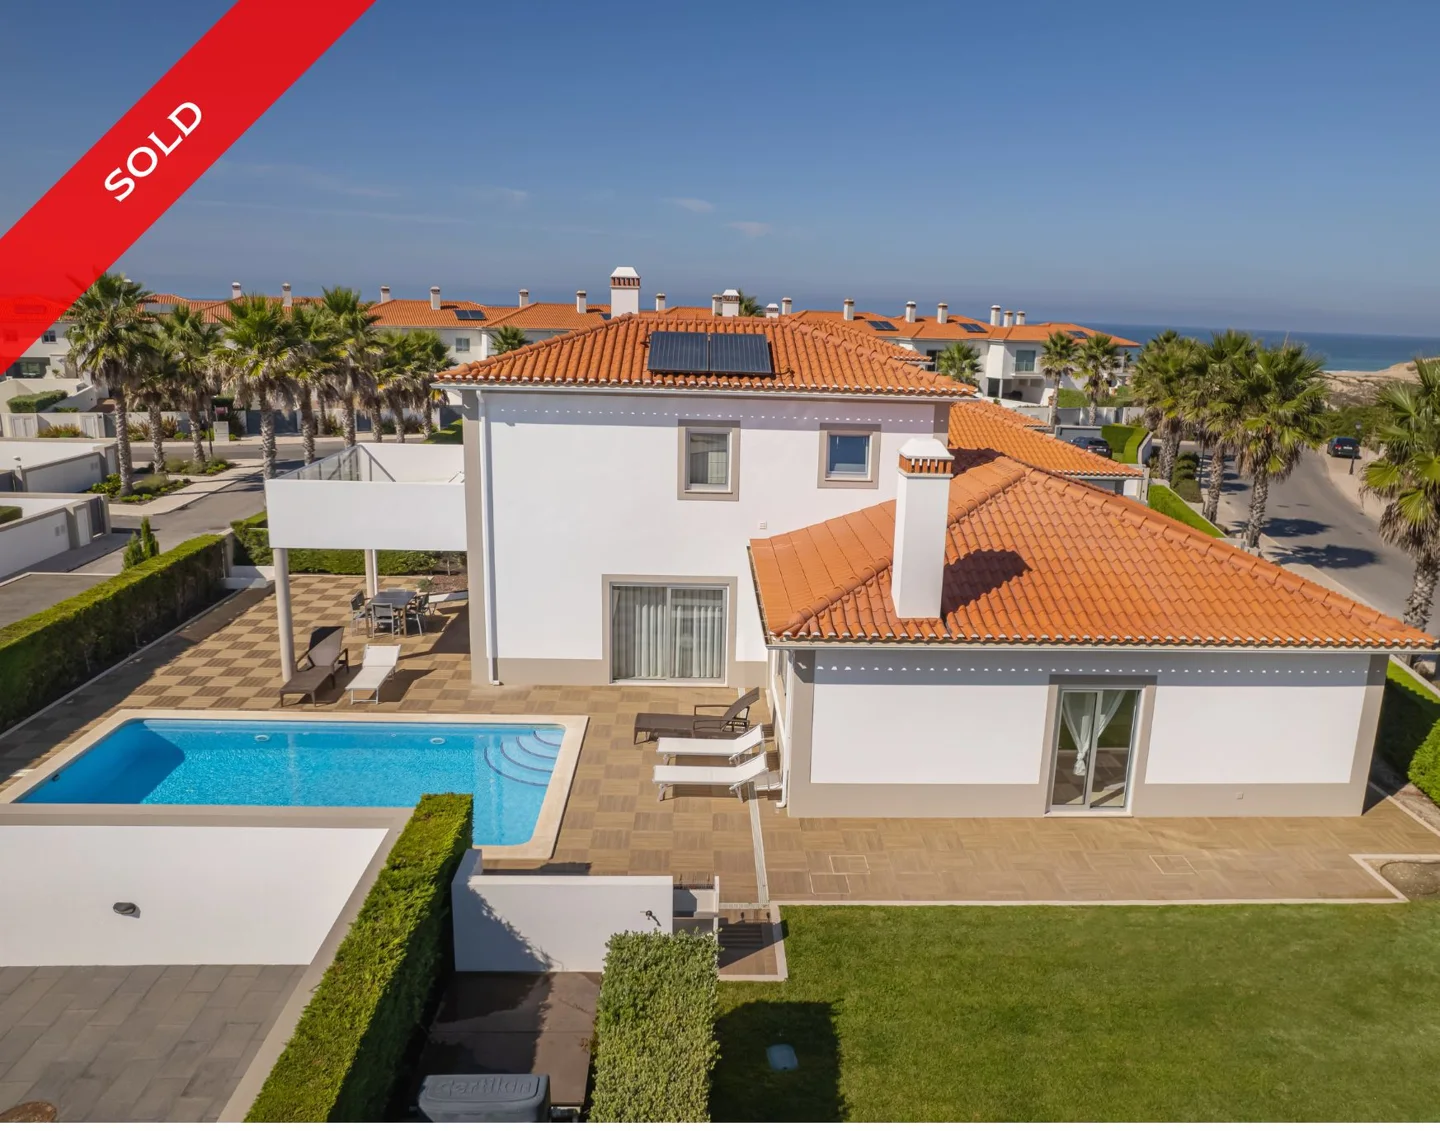 Beautiful Villa Located at the Prestigious Praia Rey Golf Course